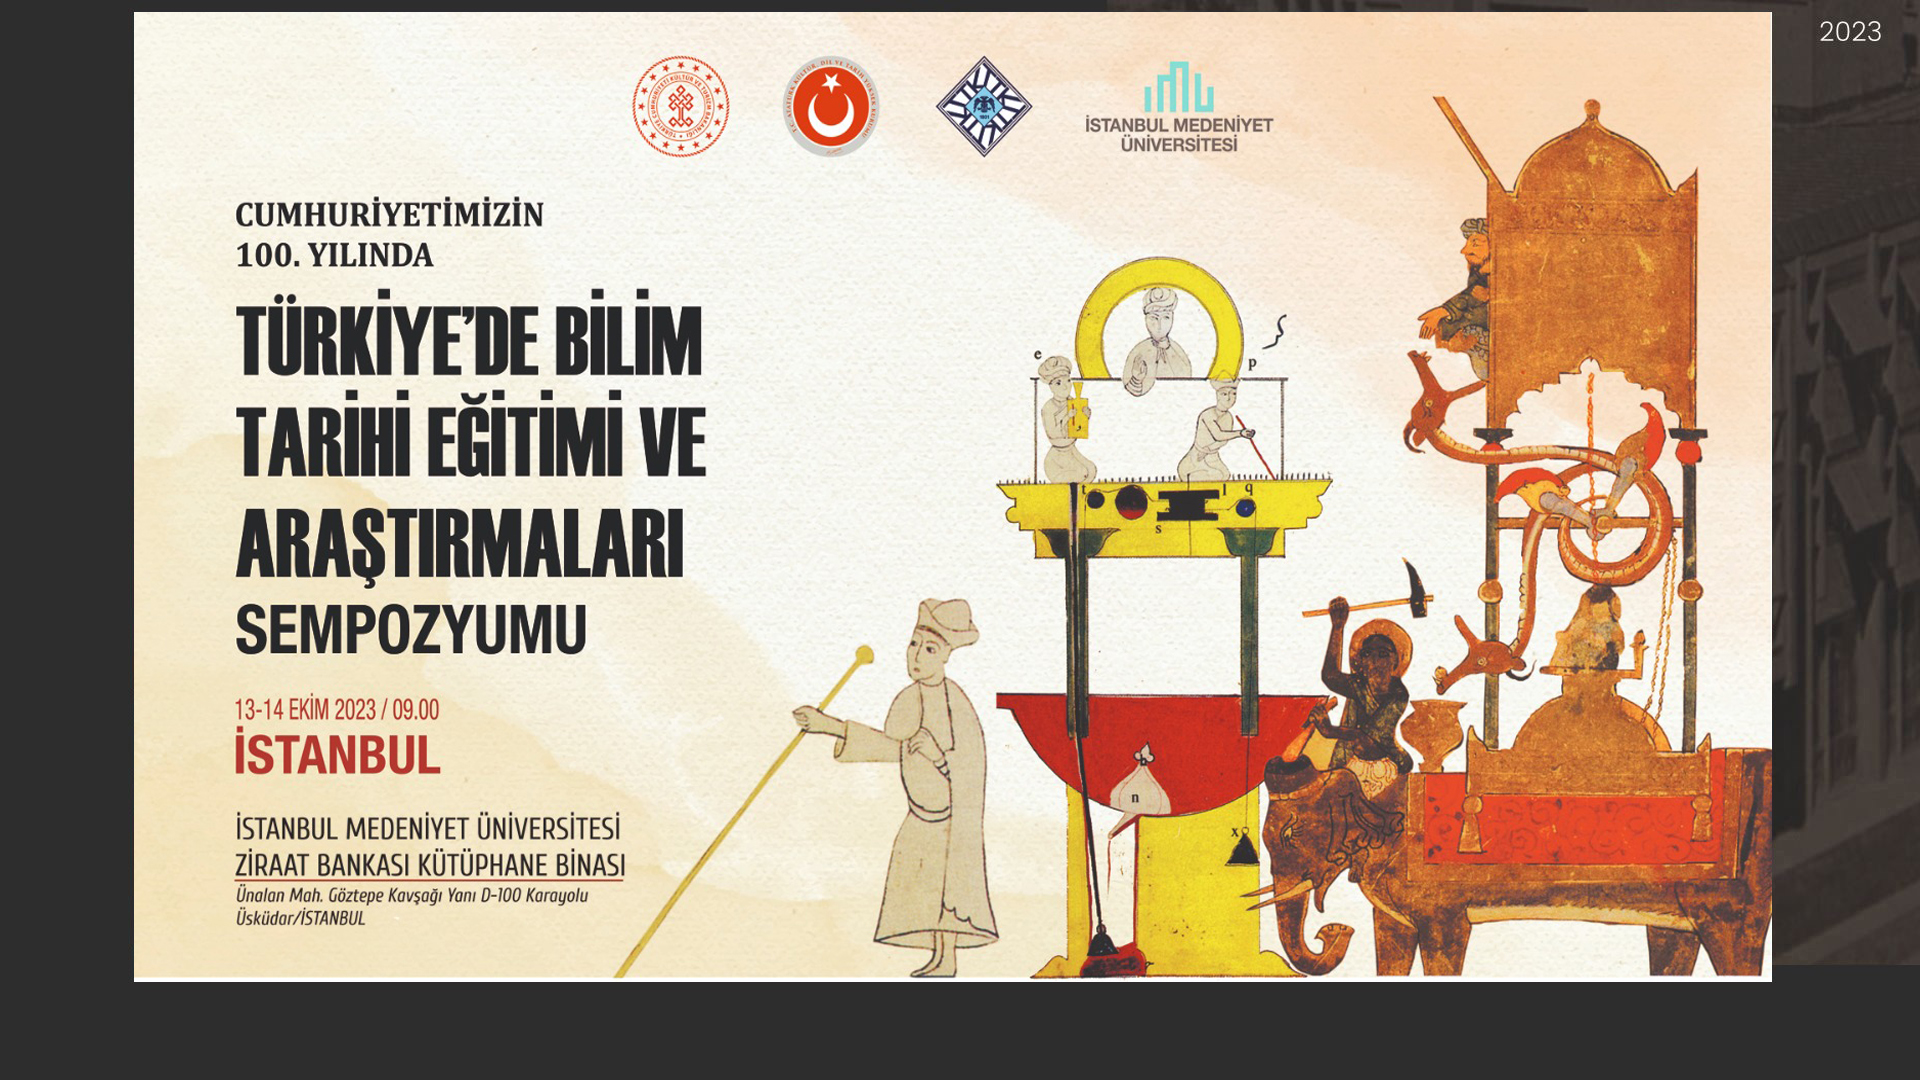  Cumhuriyetimizin 100. Yılında Türkiye’de Bilim Tarihi Eğitimi ve Araştırmaları